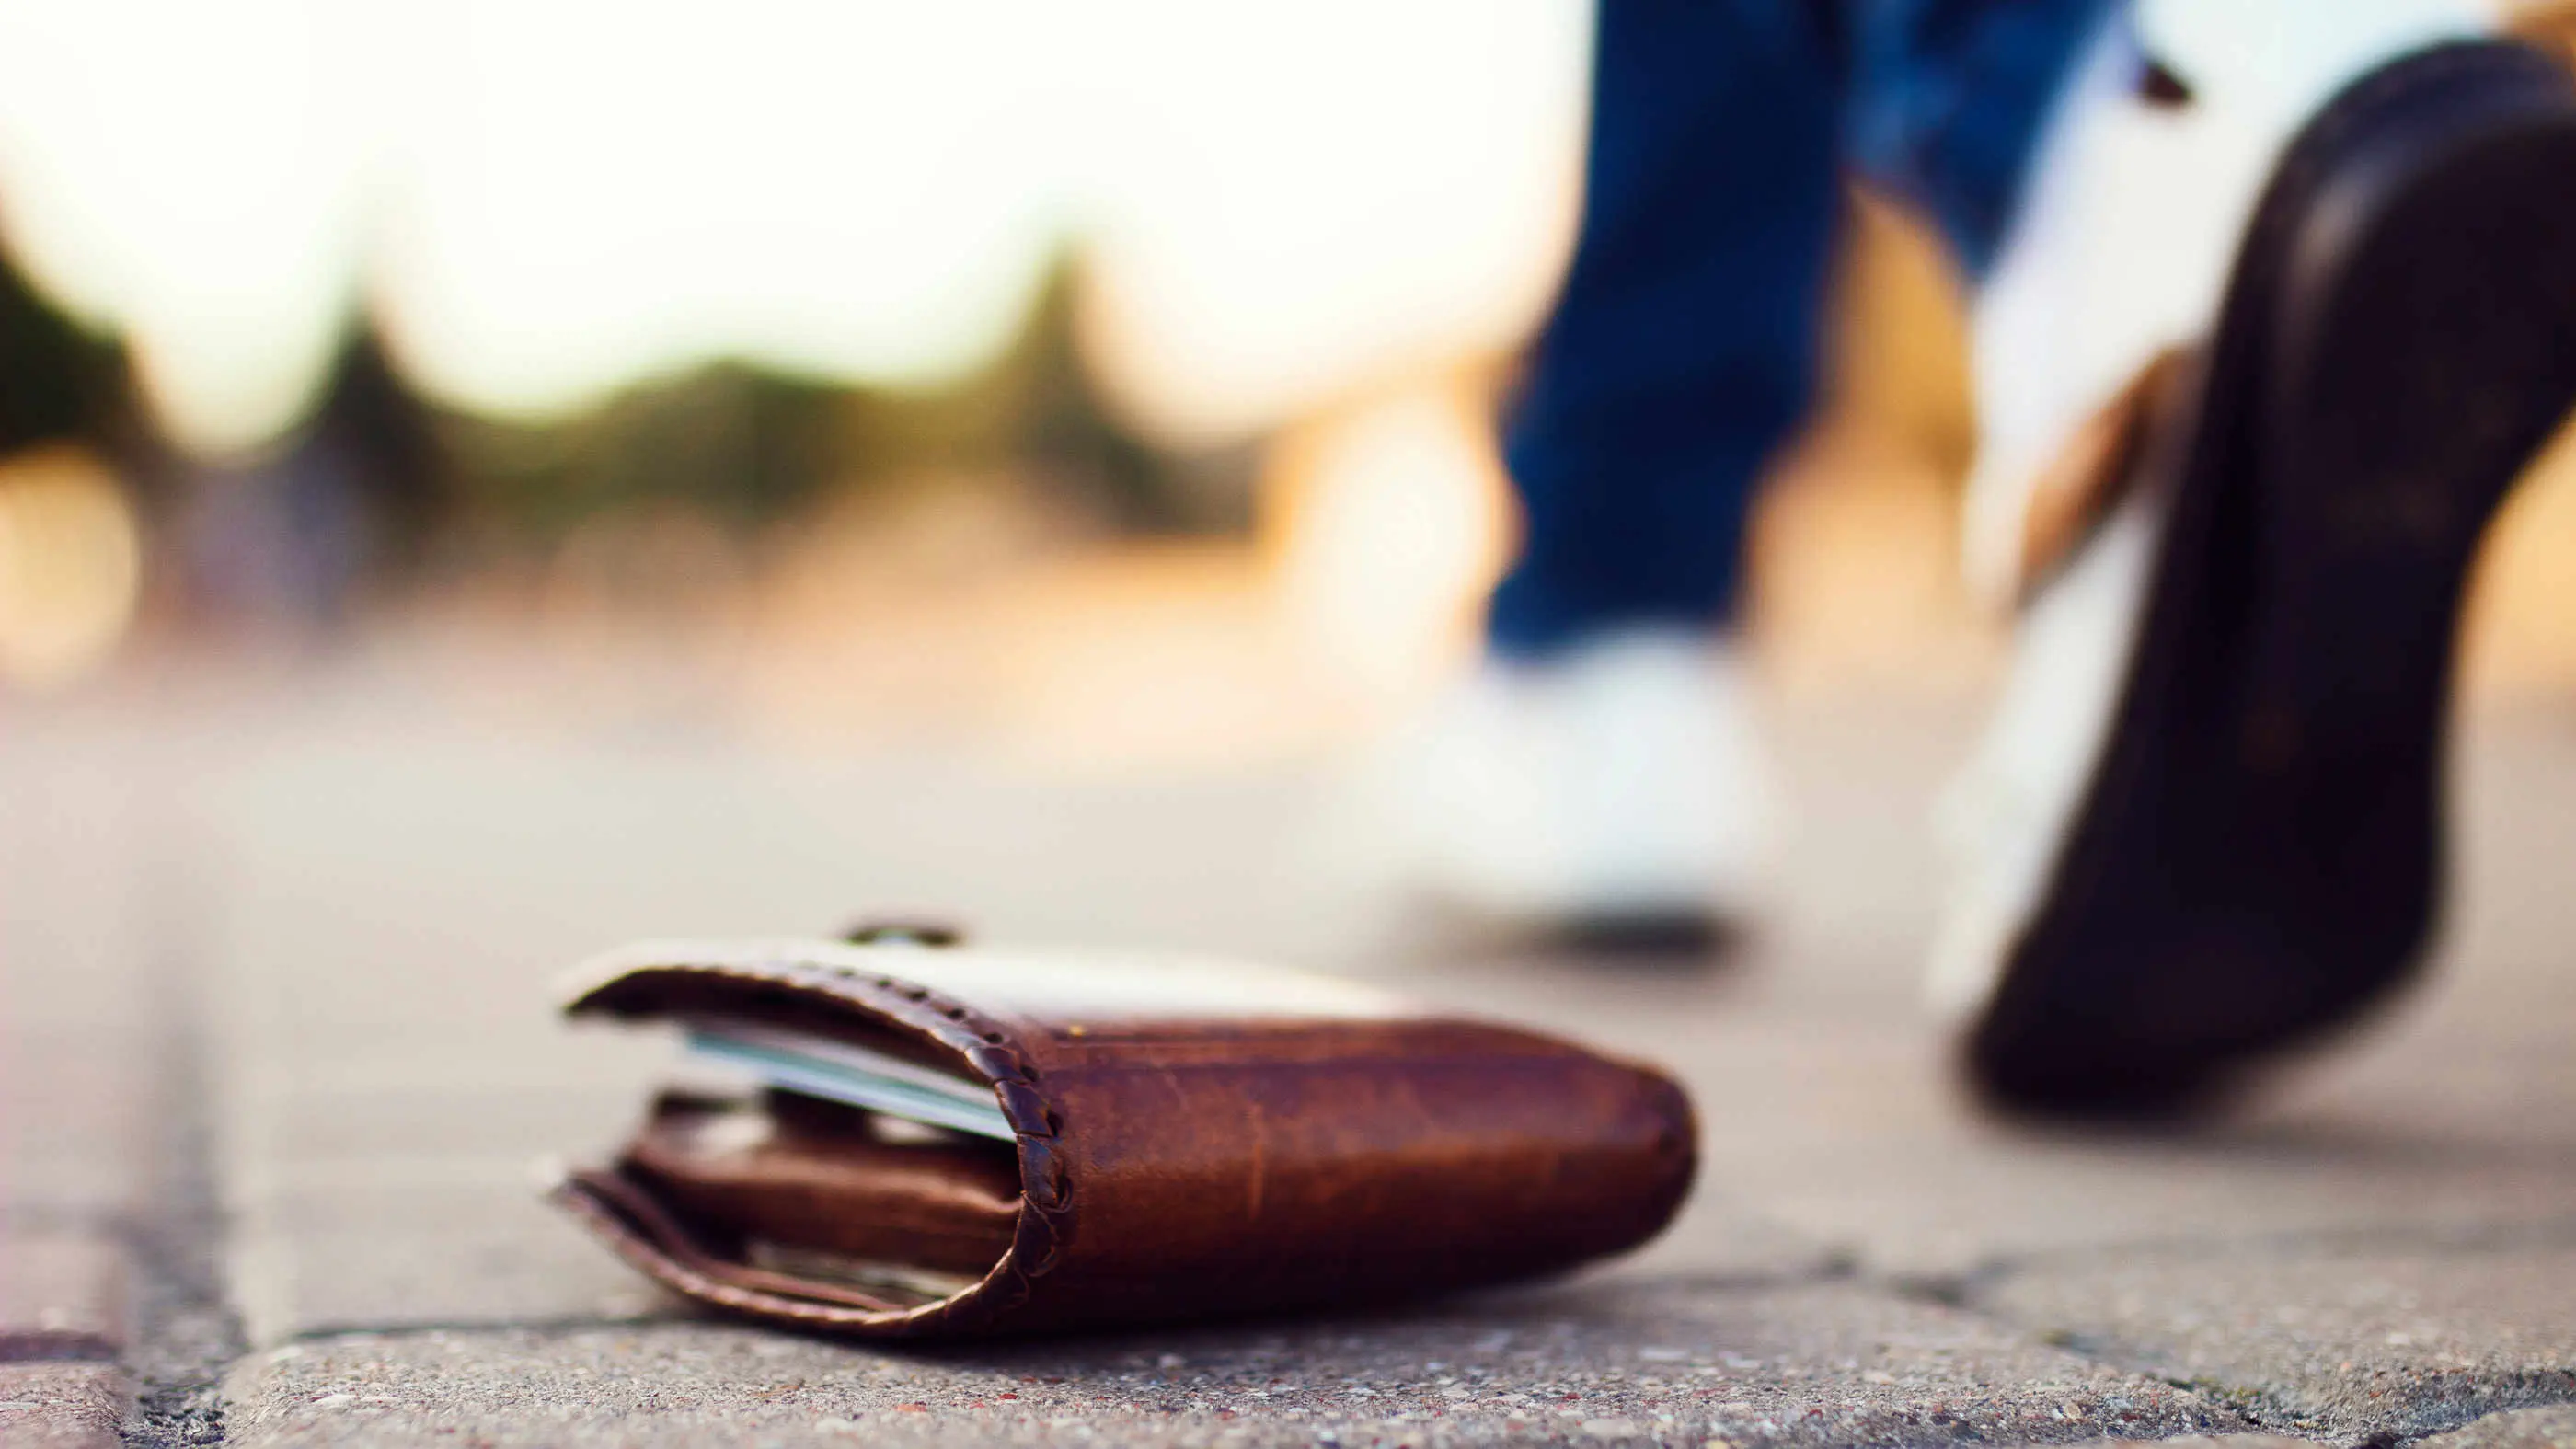 Ein verlorenes gefülltes Portemonnaie liegt auf dem Gehsteig, daneben sieht man die Füße einer vorbei gehenden Person.